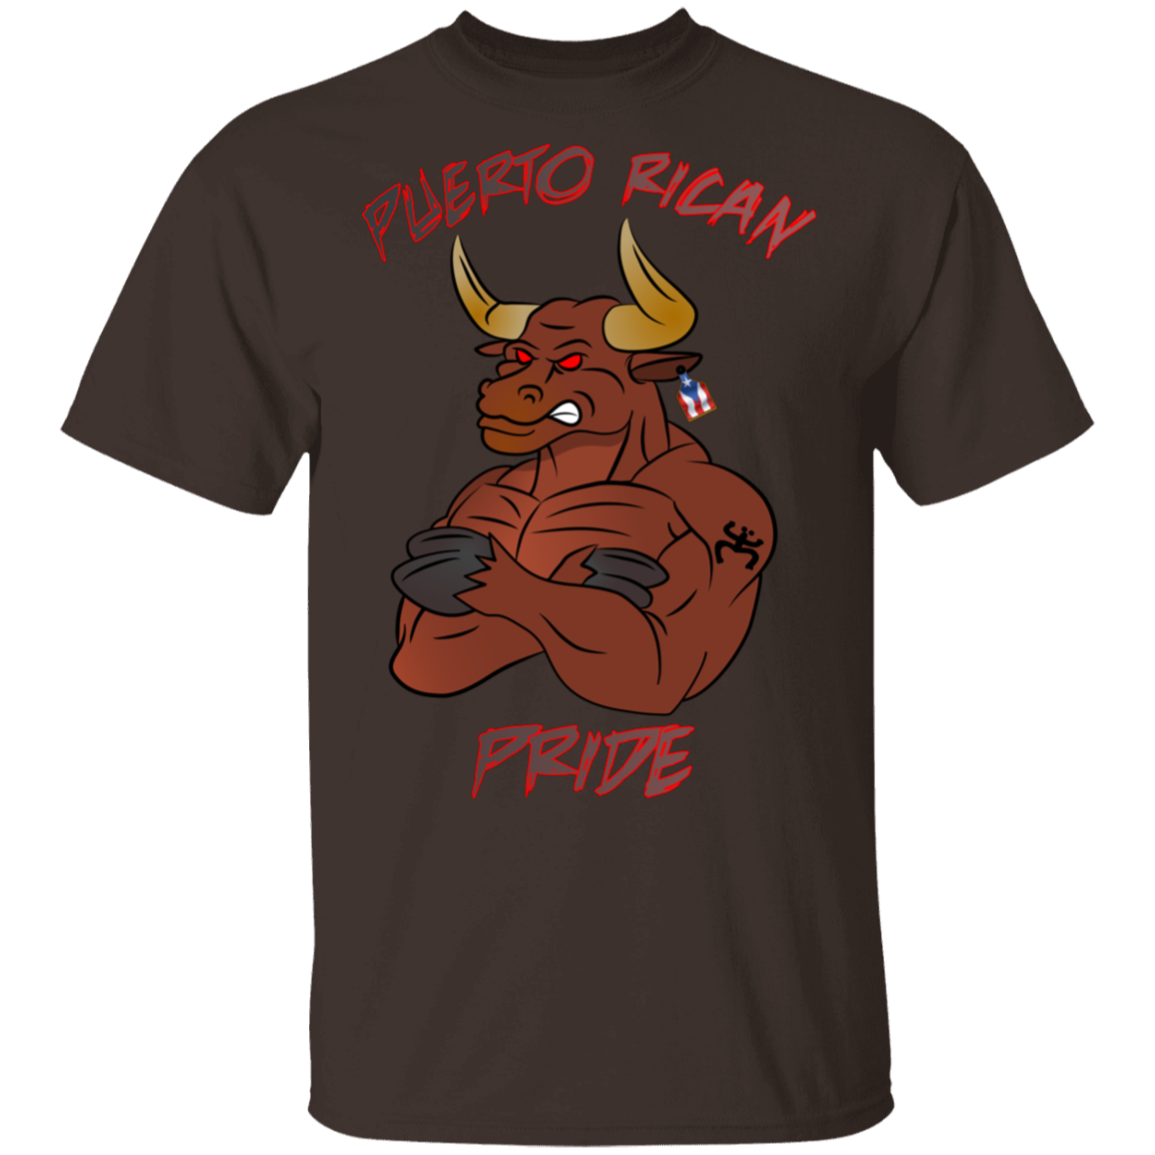 Puerto Rican Pride, No Bull 5.3 oz. T-Shirt - Puerto Rican Pride